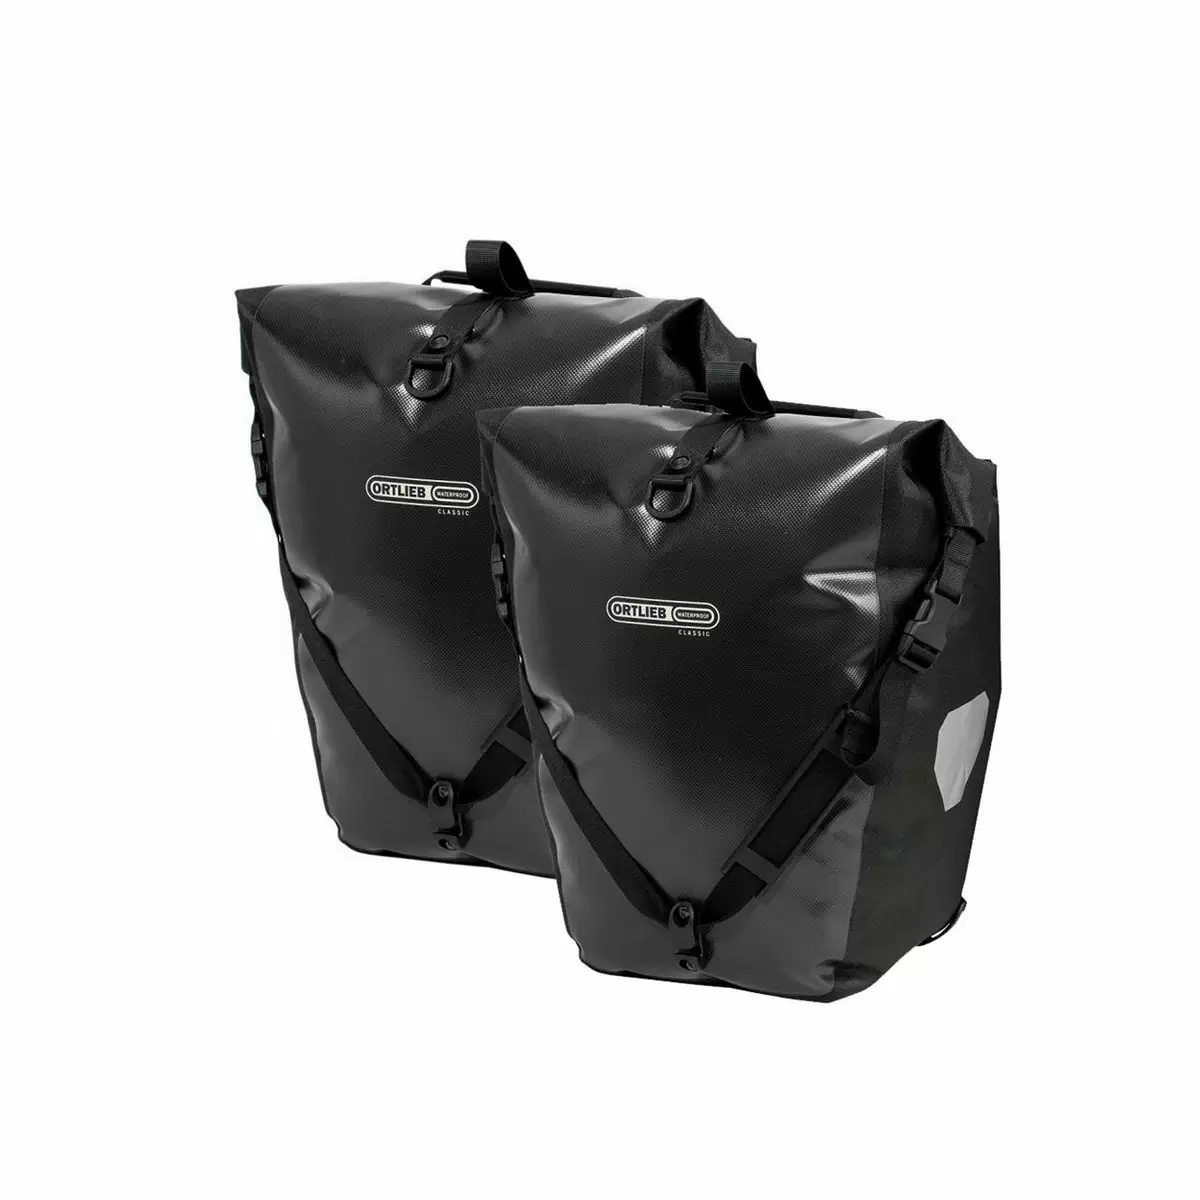 set de sacoches back-roller classic f5301 ql2.1 noir 40l - image